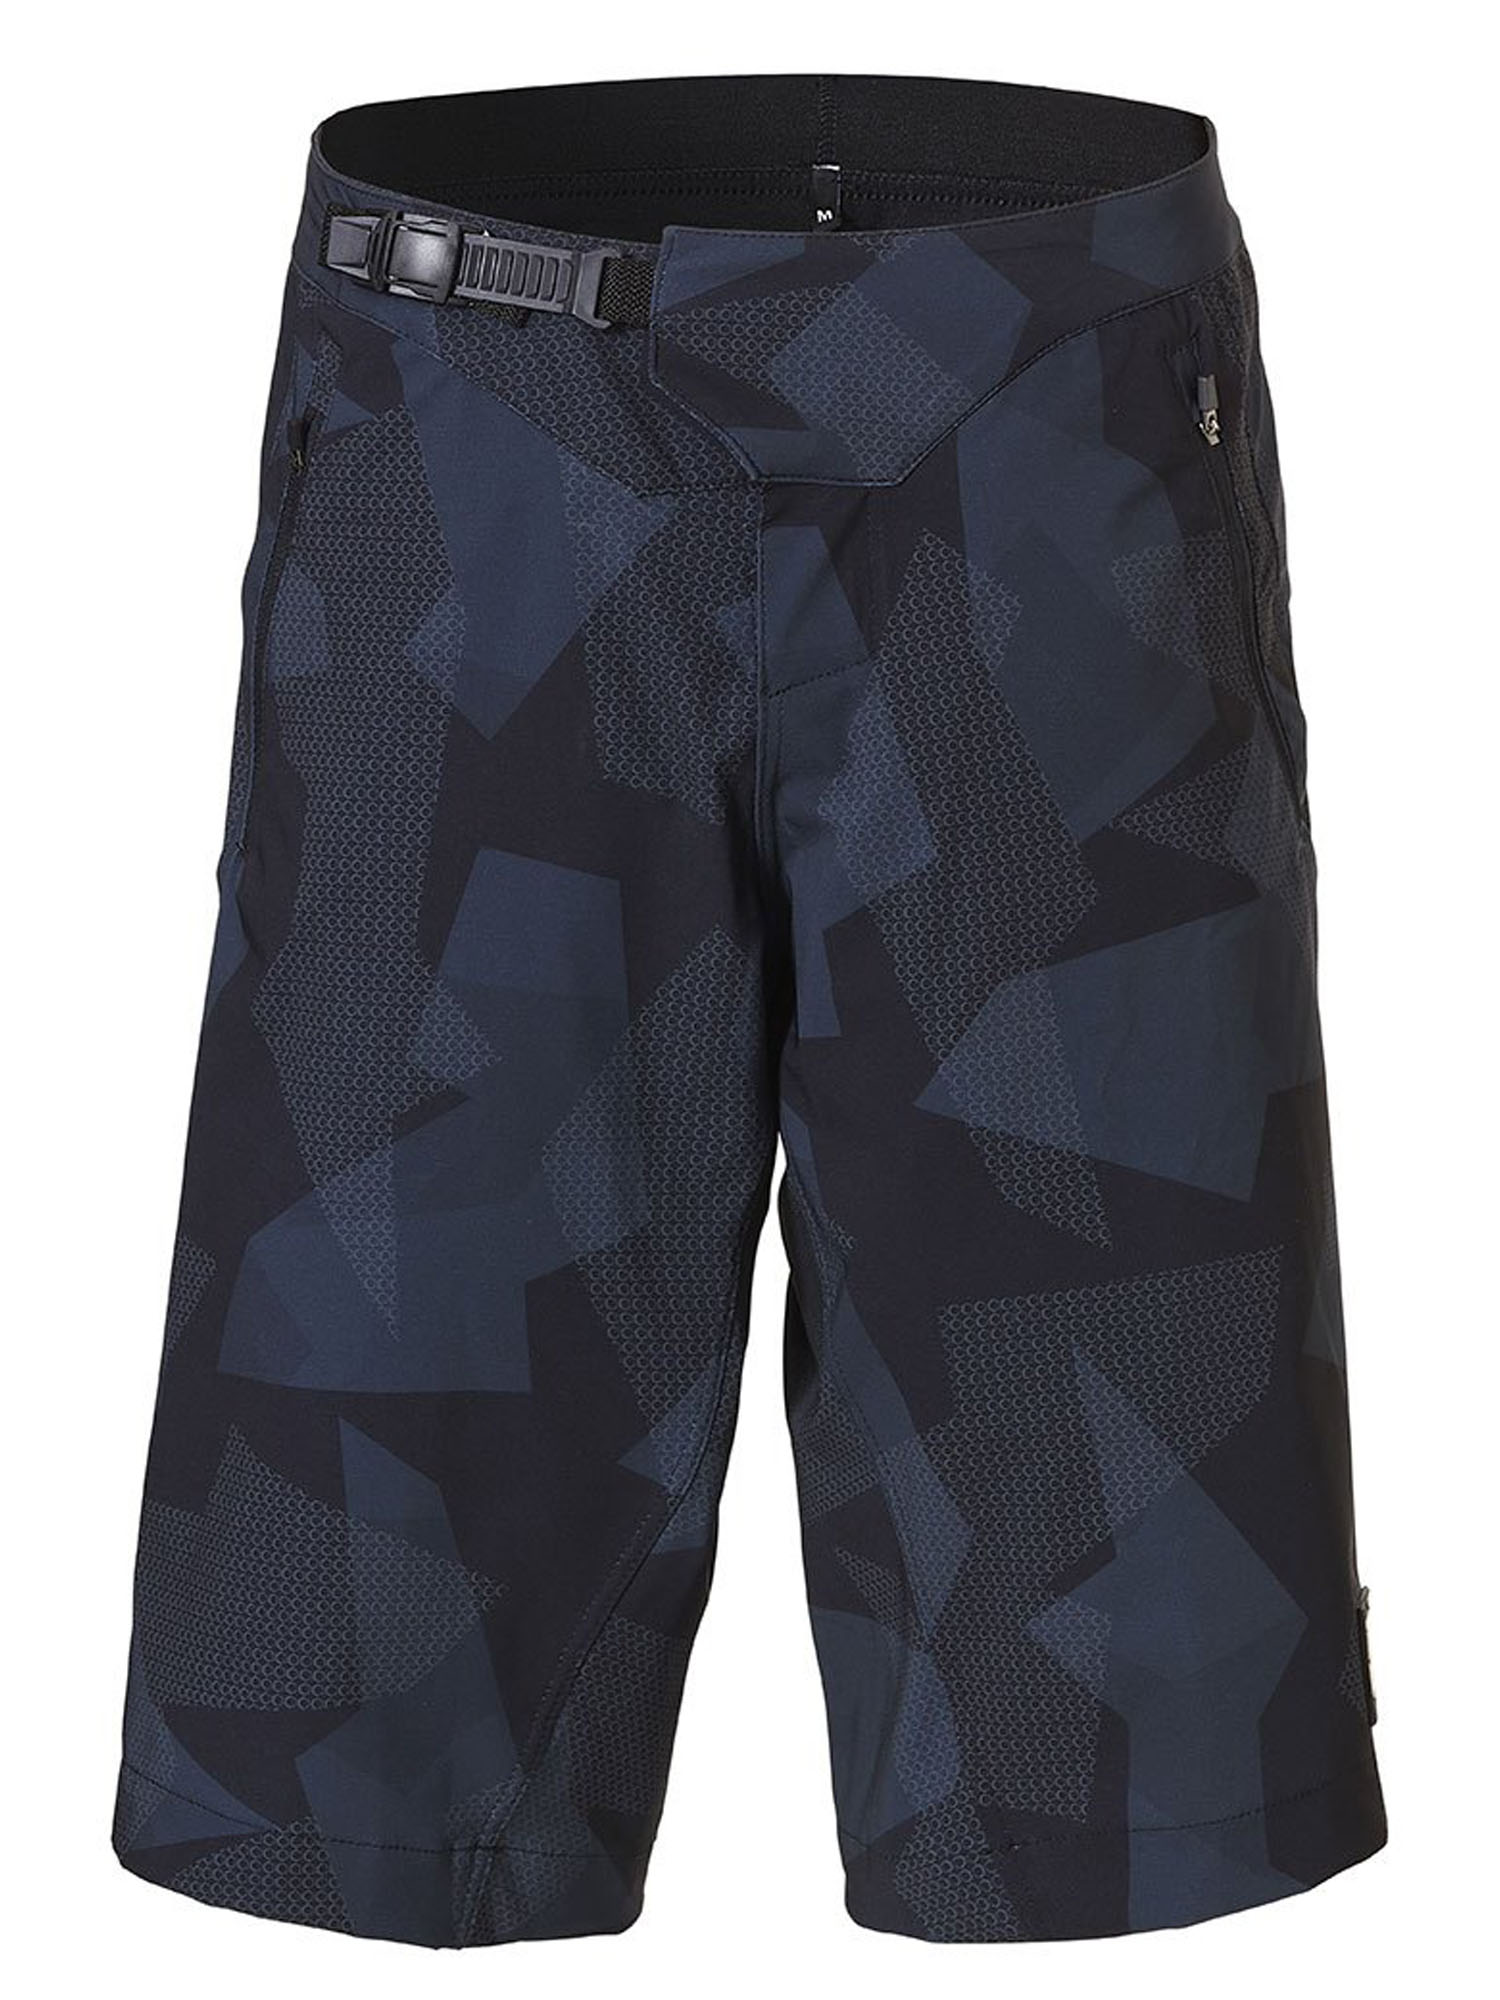 Повседневные шорты мужские REHALL Dragg-R Bike Short серые XL